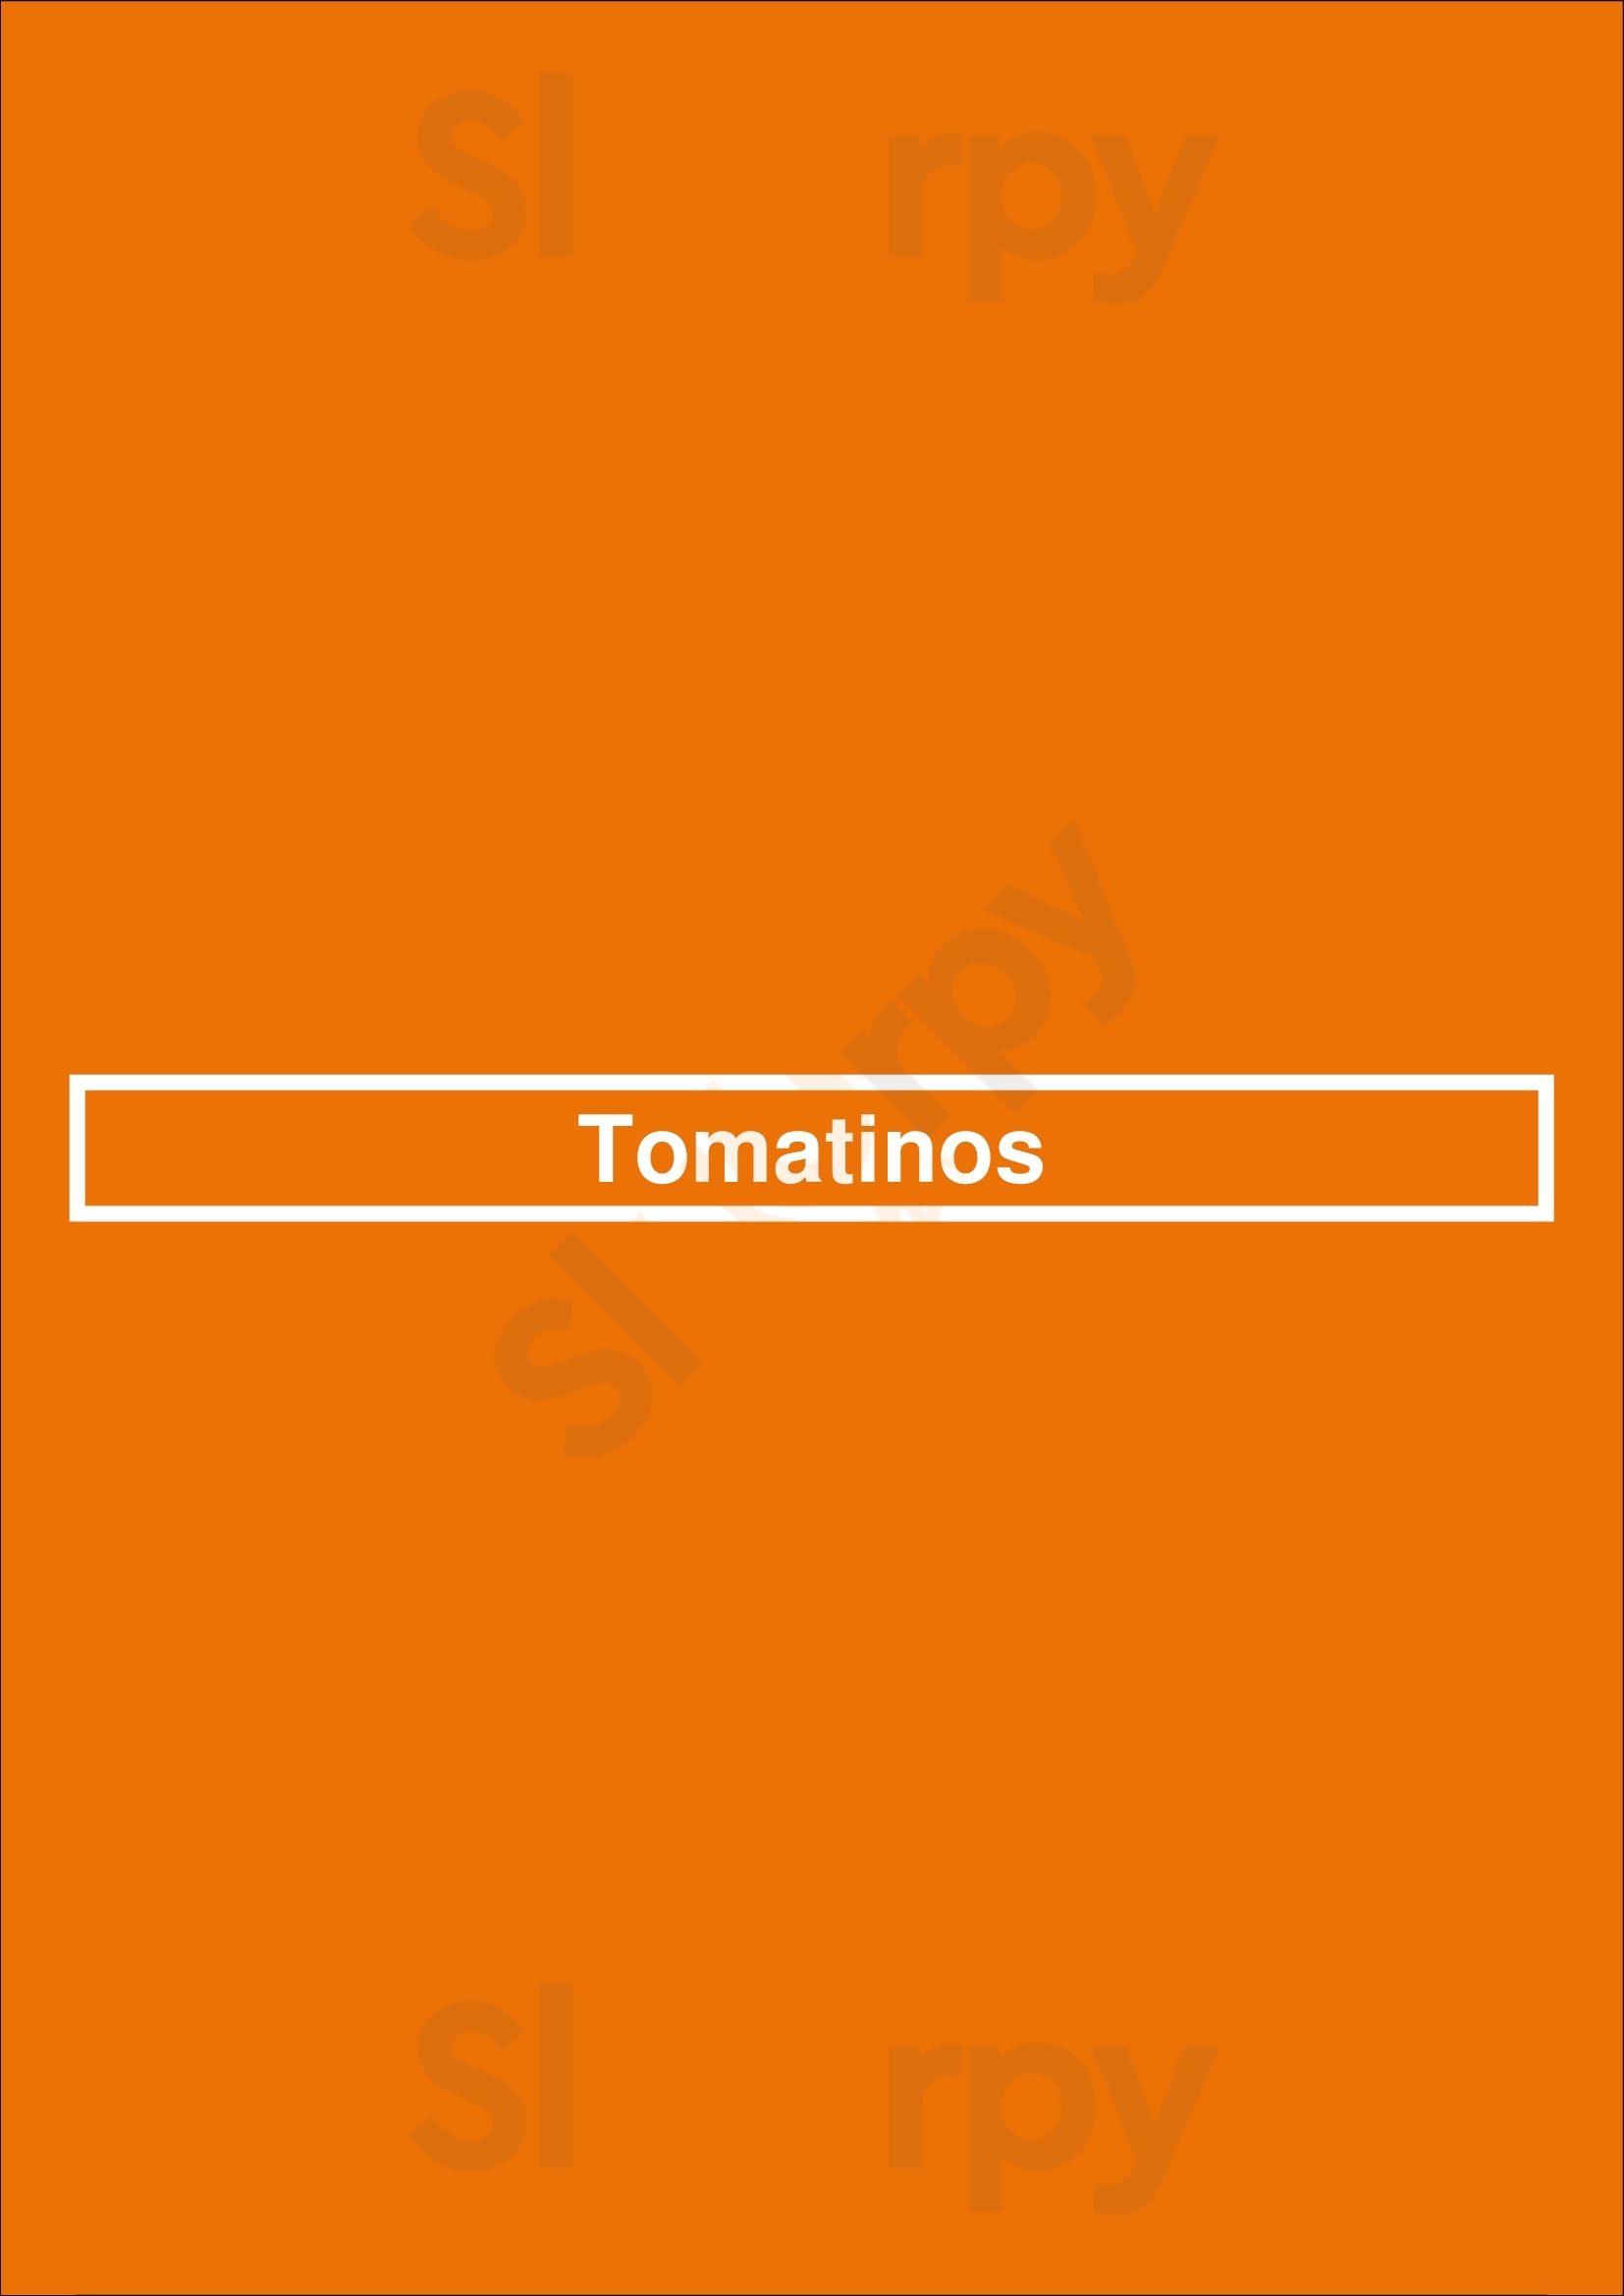 Tomatinos London Menu - 1